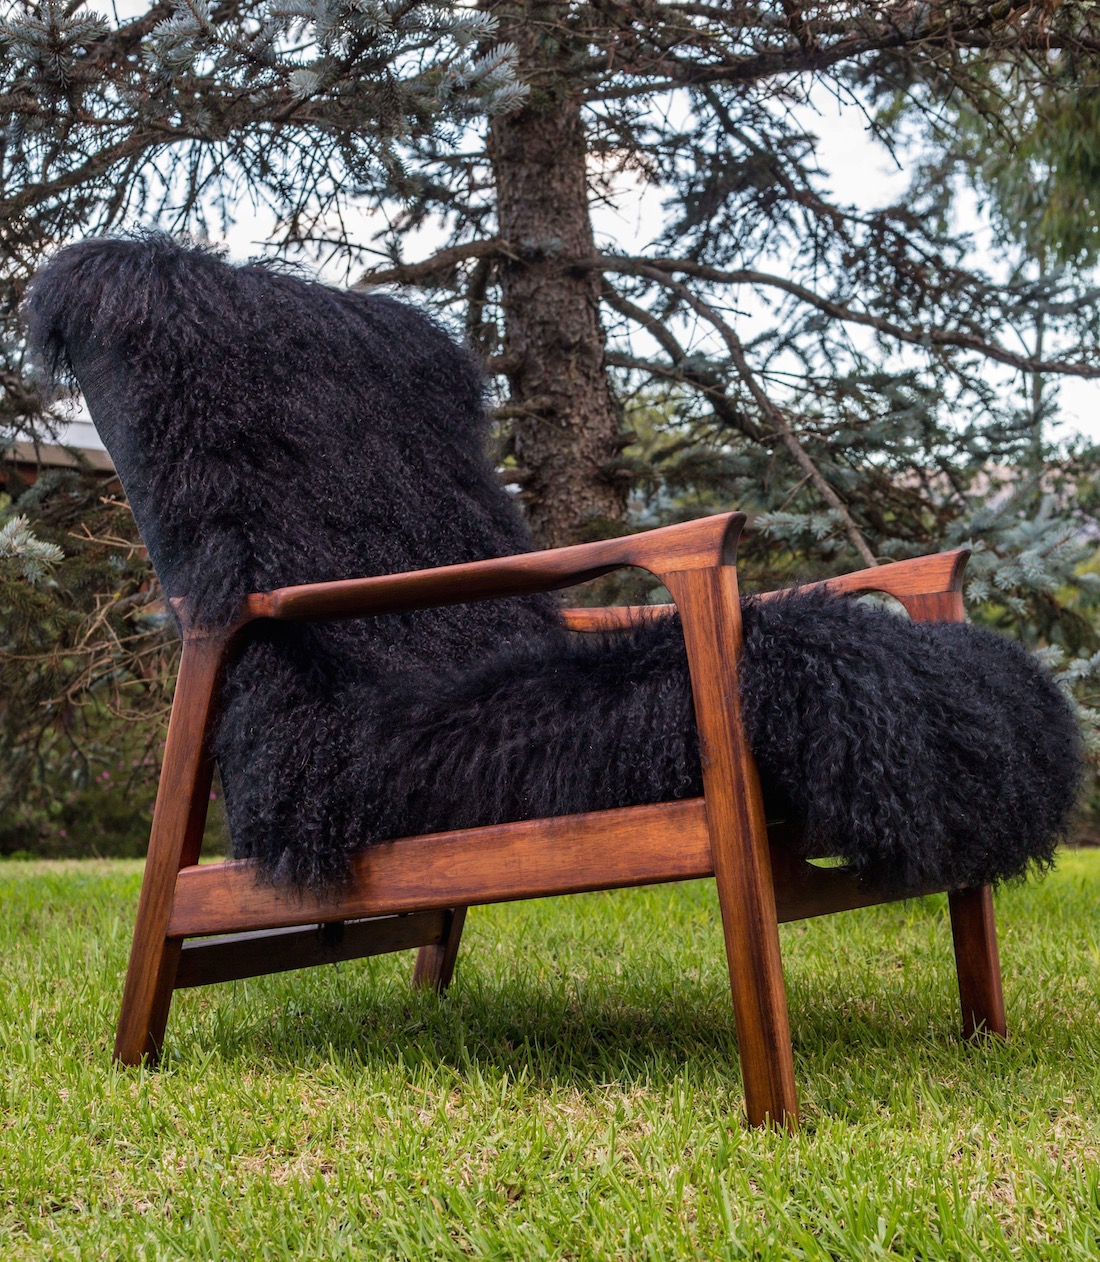 Custom fluffy chair by Antiquate artist Kerri Hollingworth